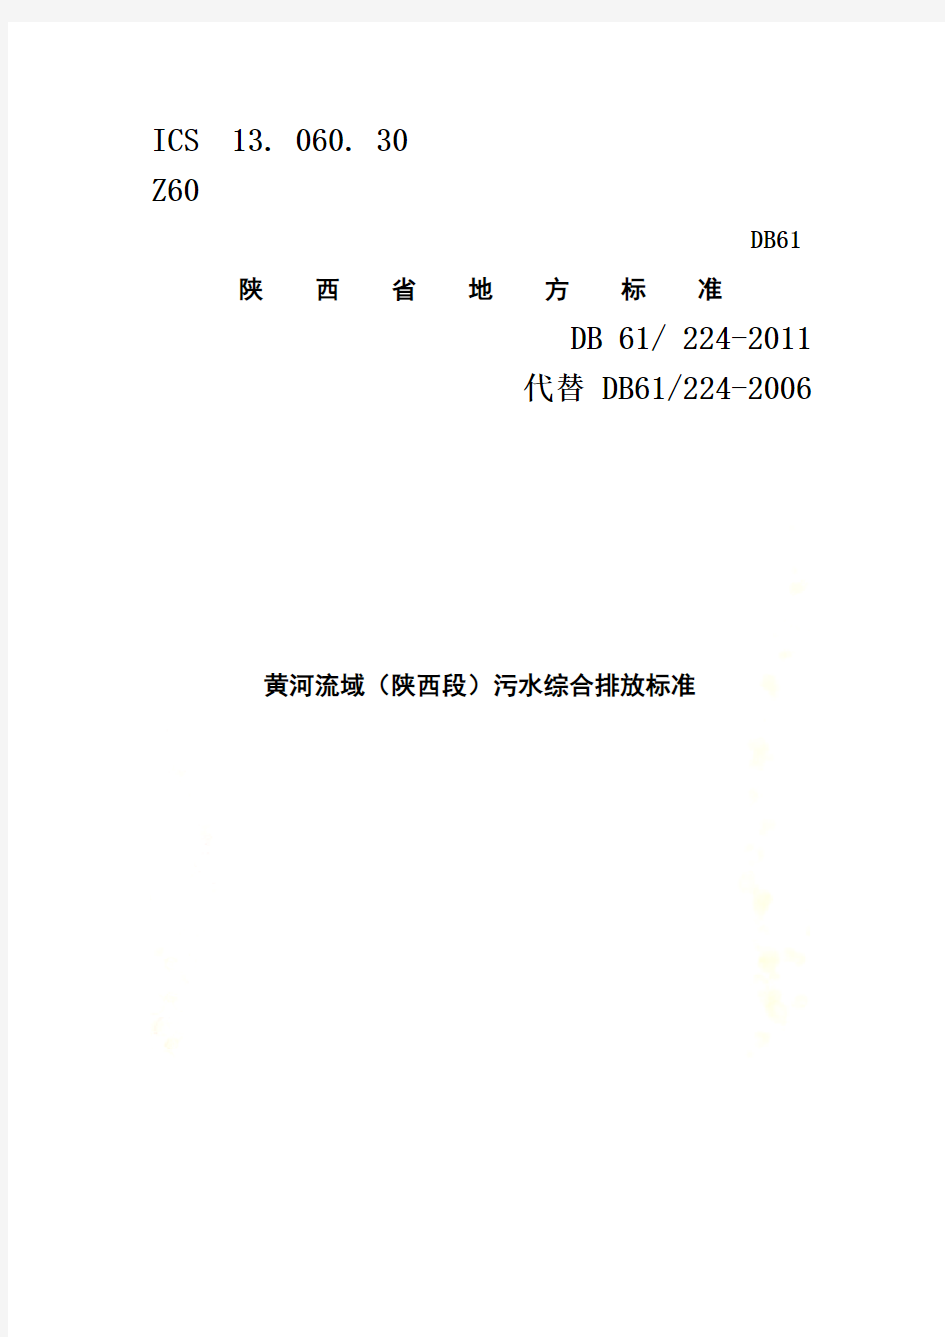 黄河流域(陕西段)污水综合排放标准-DB-61--224-2011